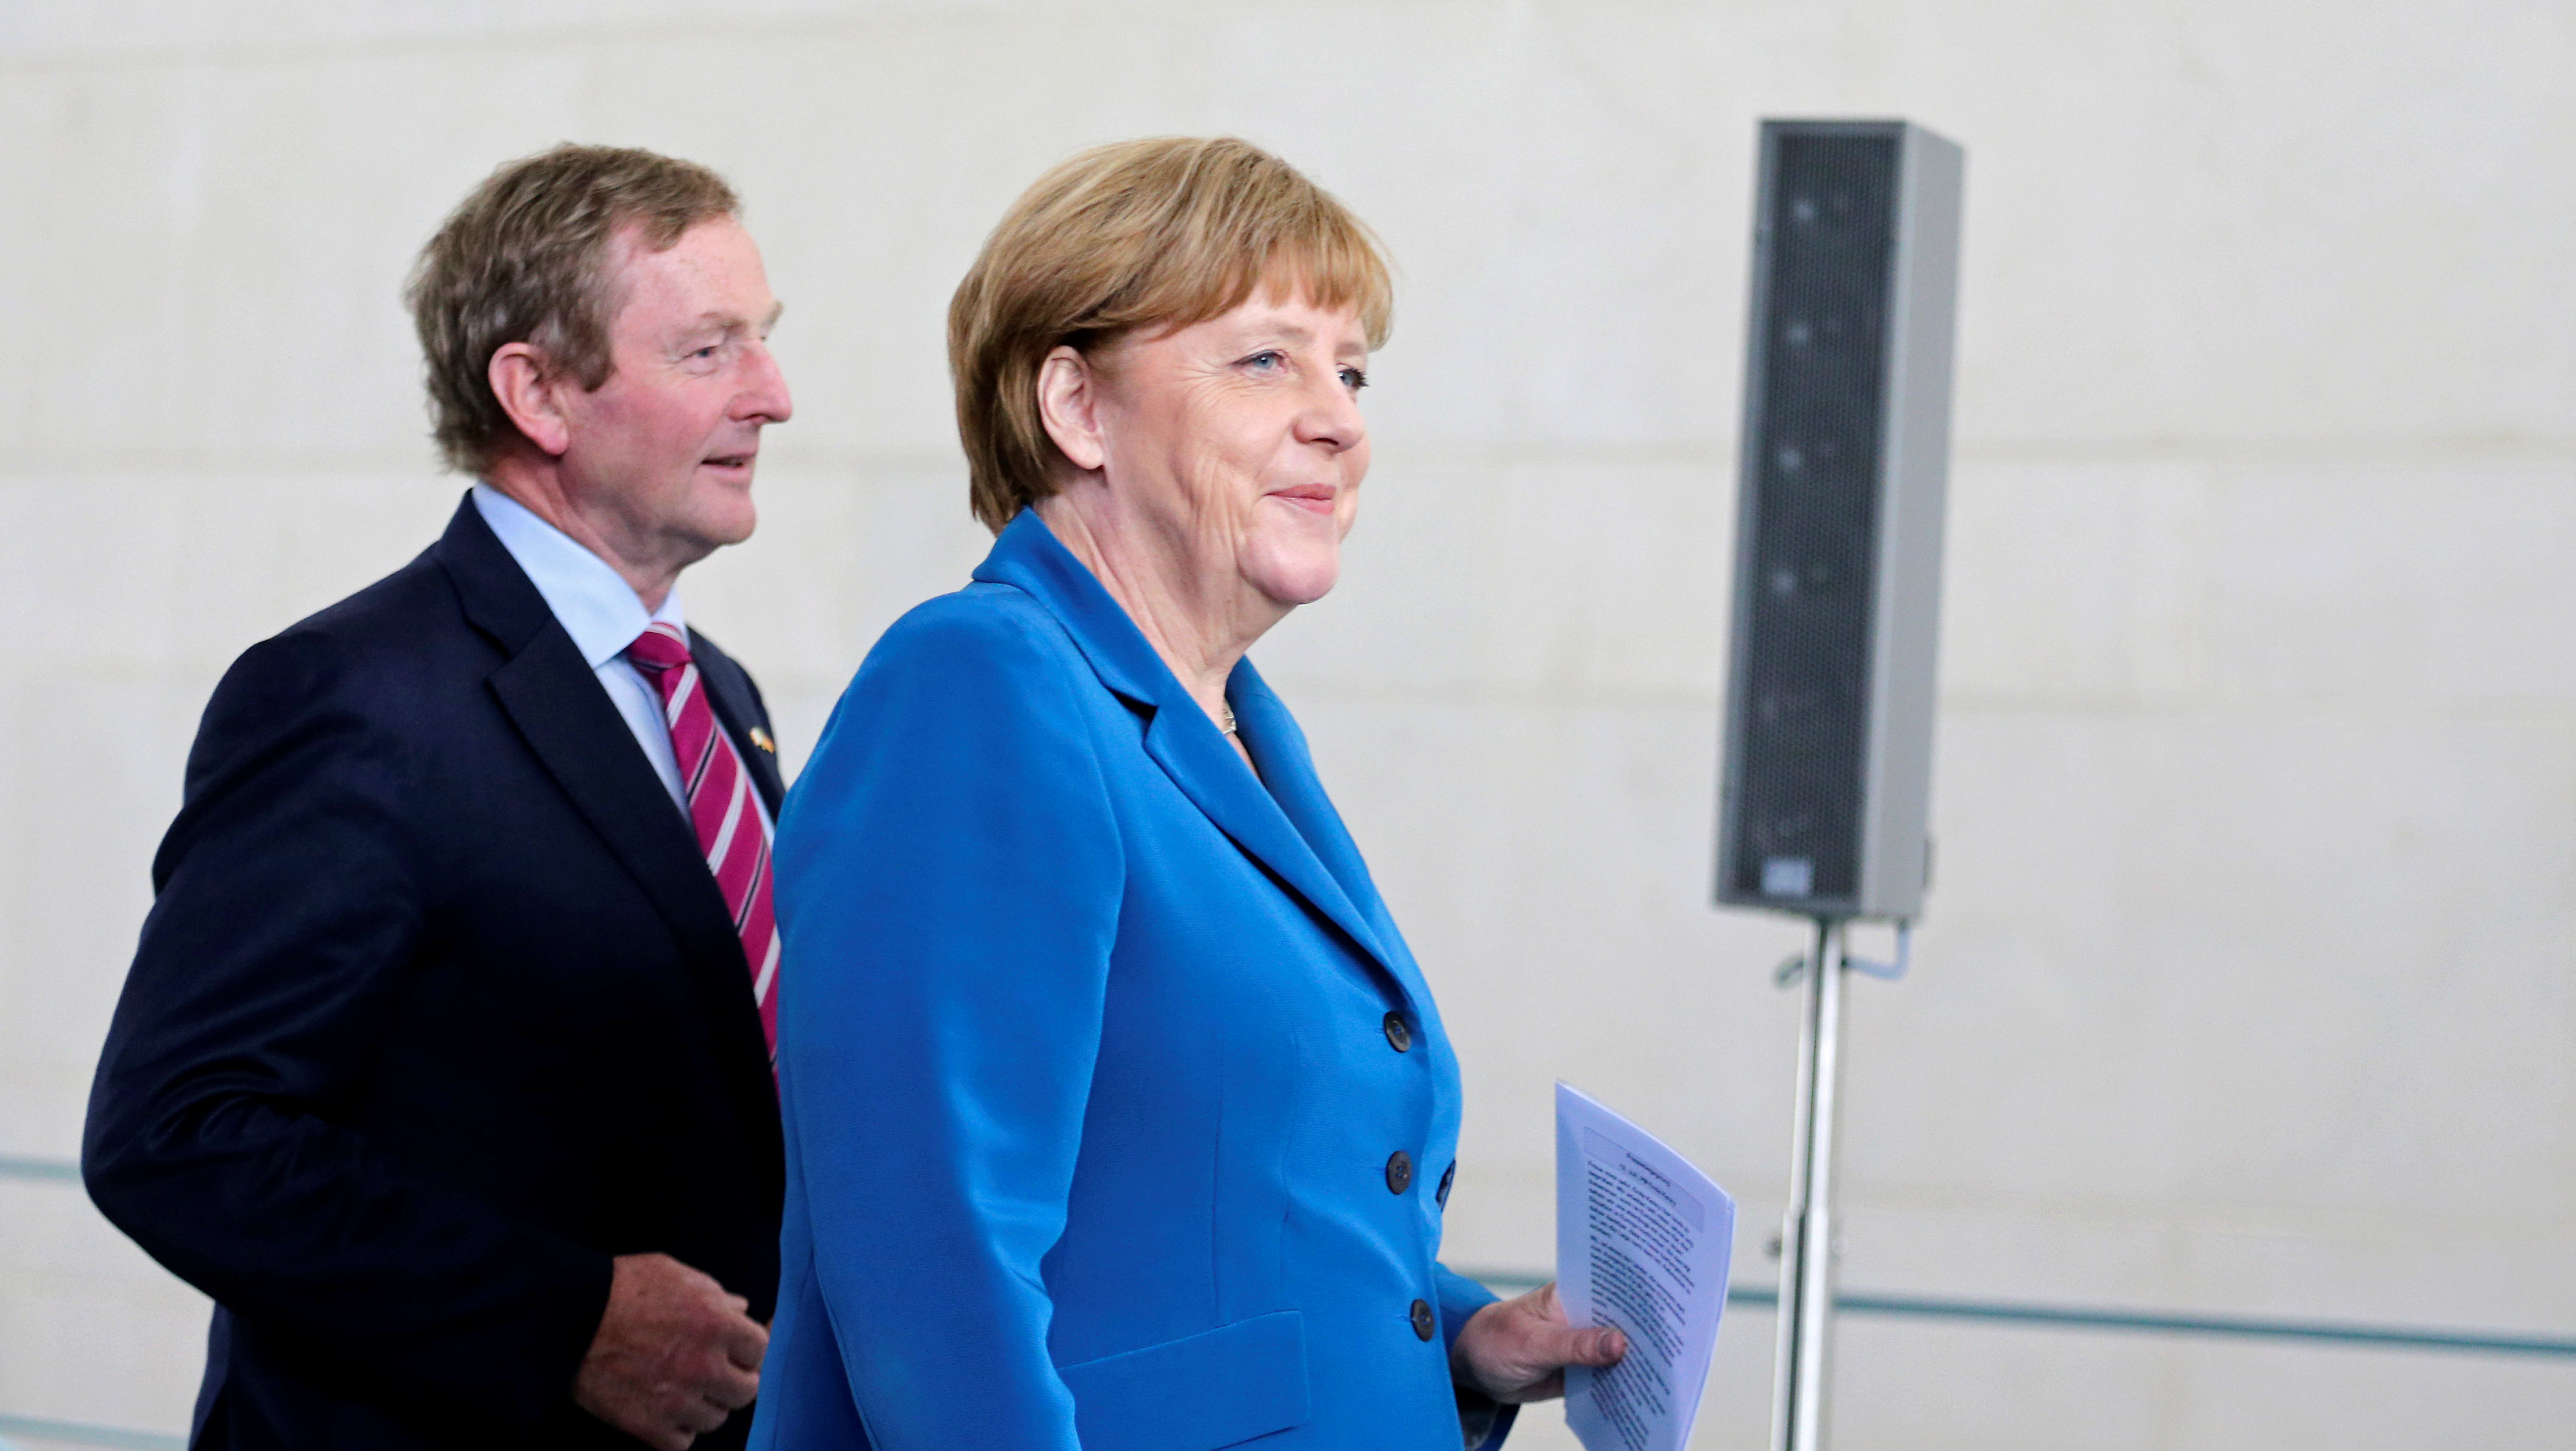 Merkel dice que Theresa May debe decidir sobre vínculos entre Reino Unido y UE